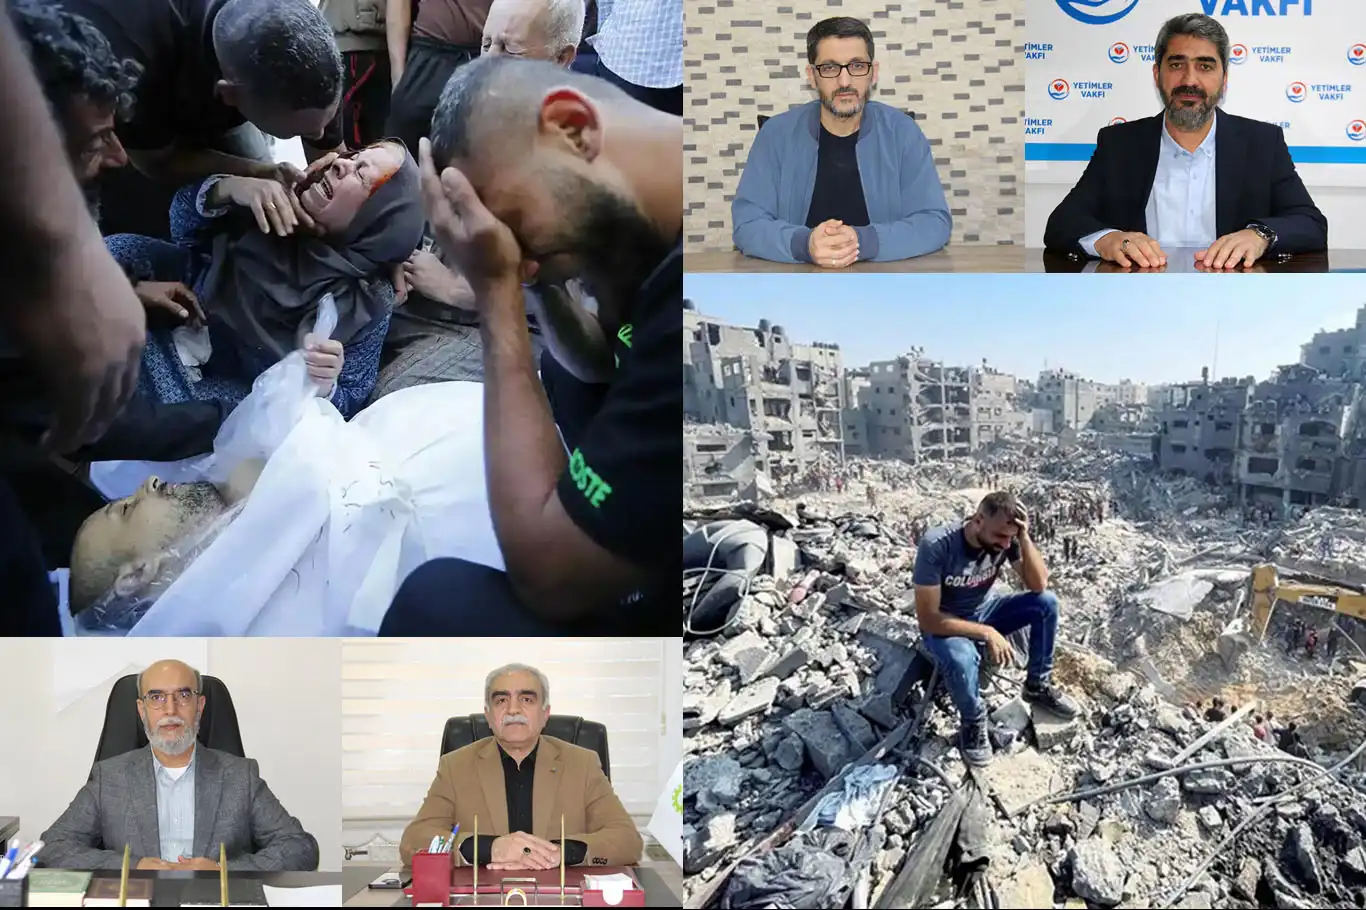 Sivil Toplum Kuruluşlarının bayram mesajlarında Gazze vurgusu 